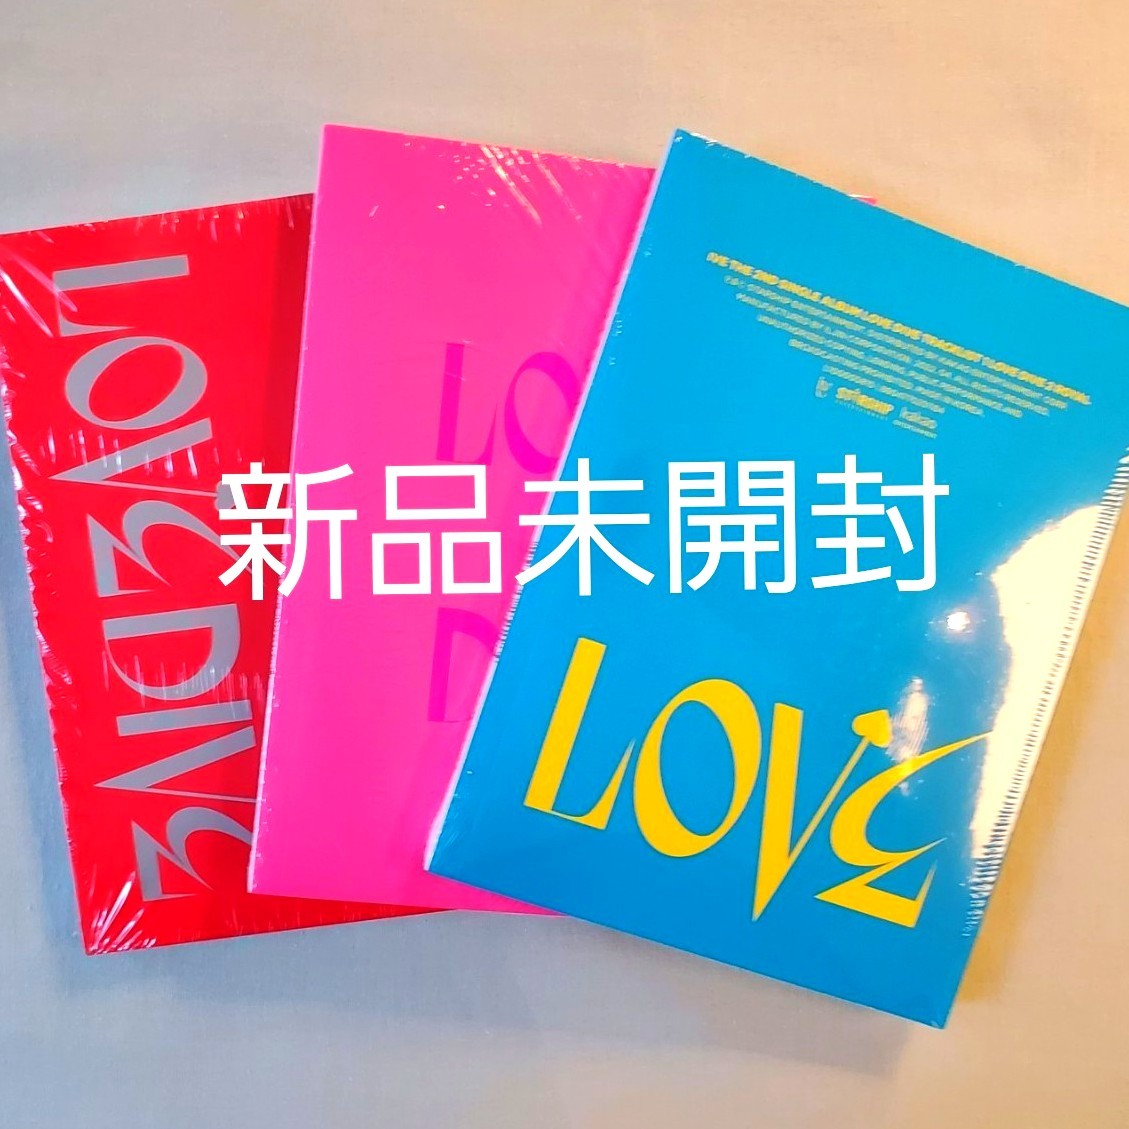 【新品未開封】IVE LOVEDIVE アルバム3形態セット